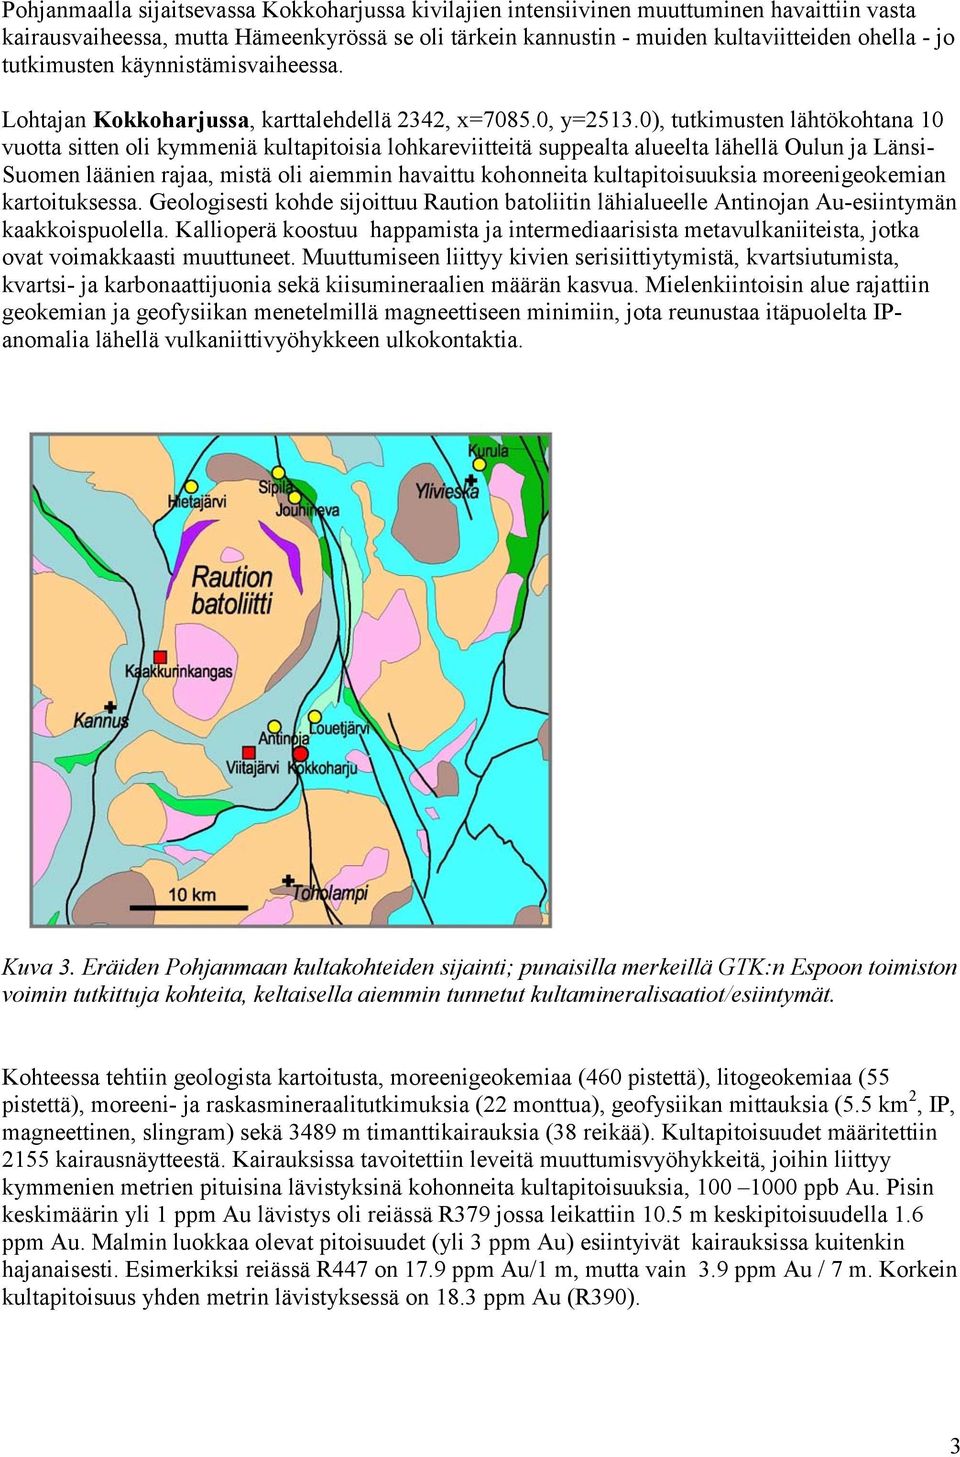 0), tutkimusten lähtökohtana 10 vuotta sitten oli kymmeniä kultapitoisia lohkareviitteitä suppealta alueelta lähellä Oulun ja Länsi- Suomen läänien rajaa, mistä oli aiemmin havaittu kohonneita